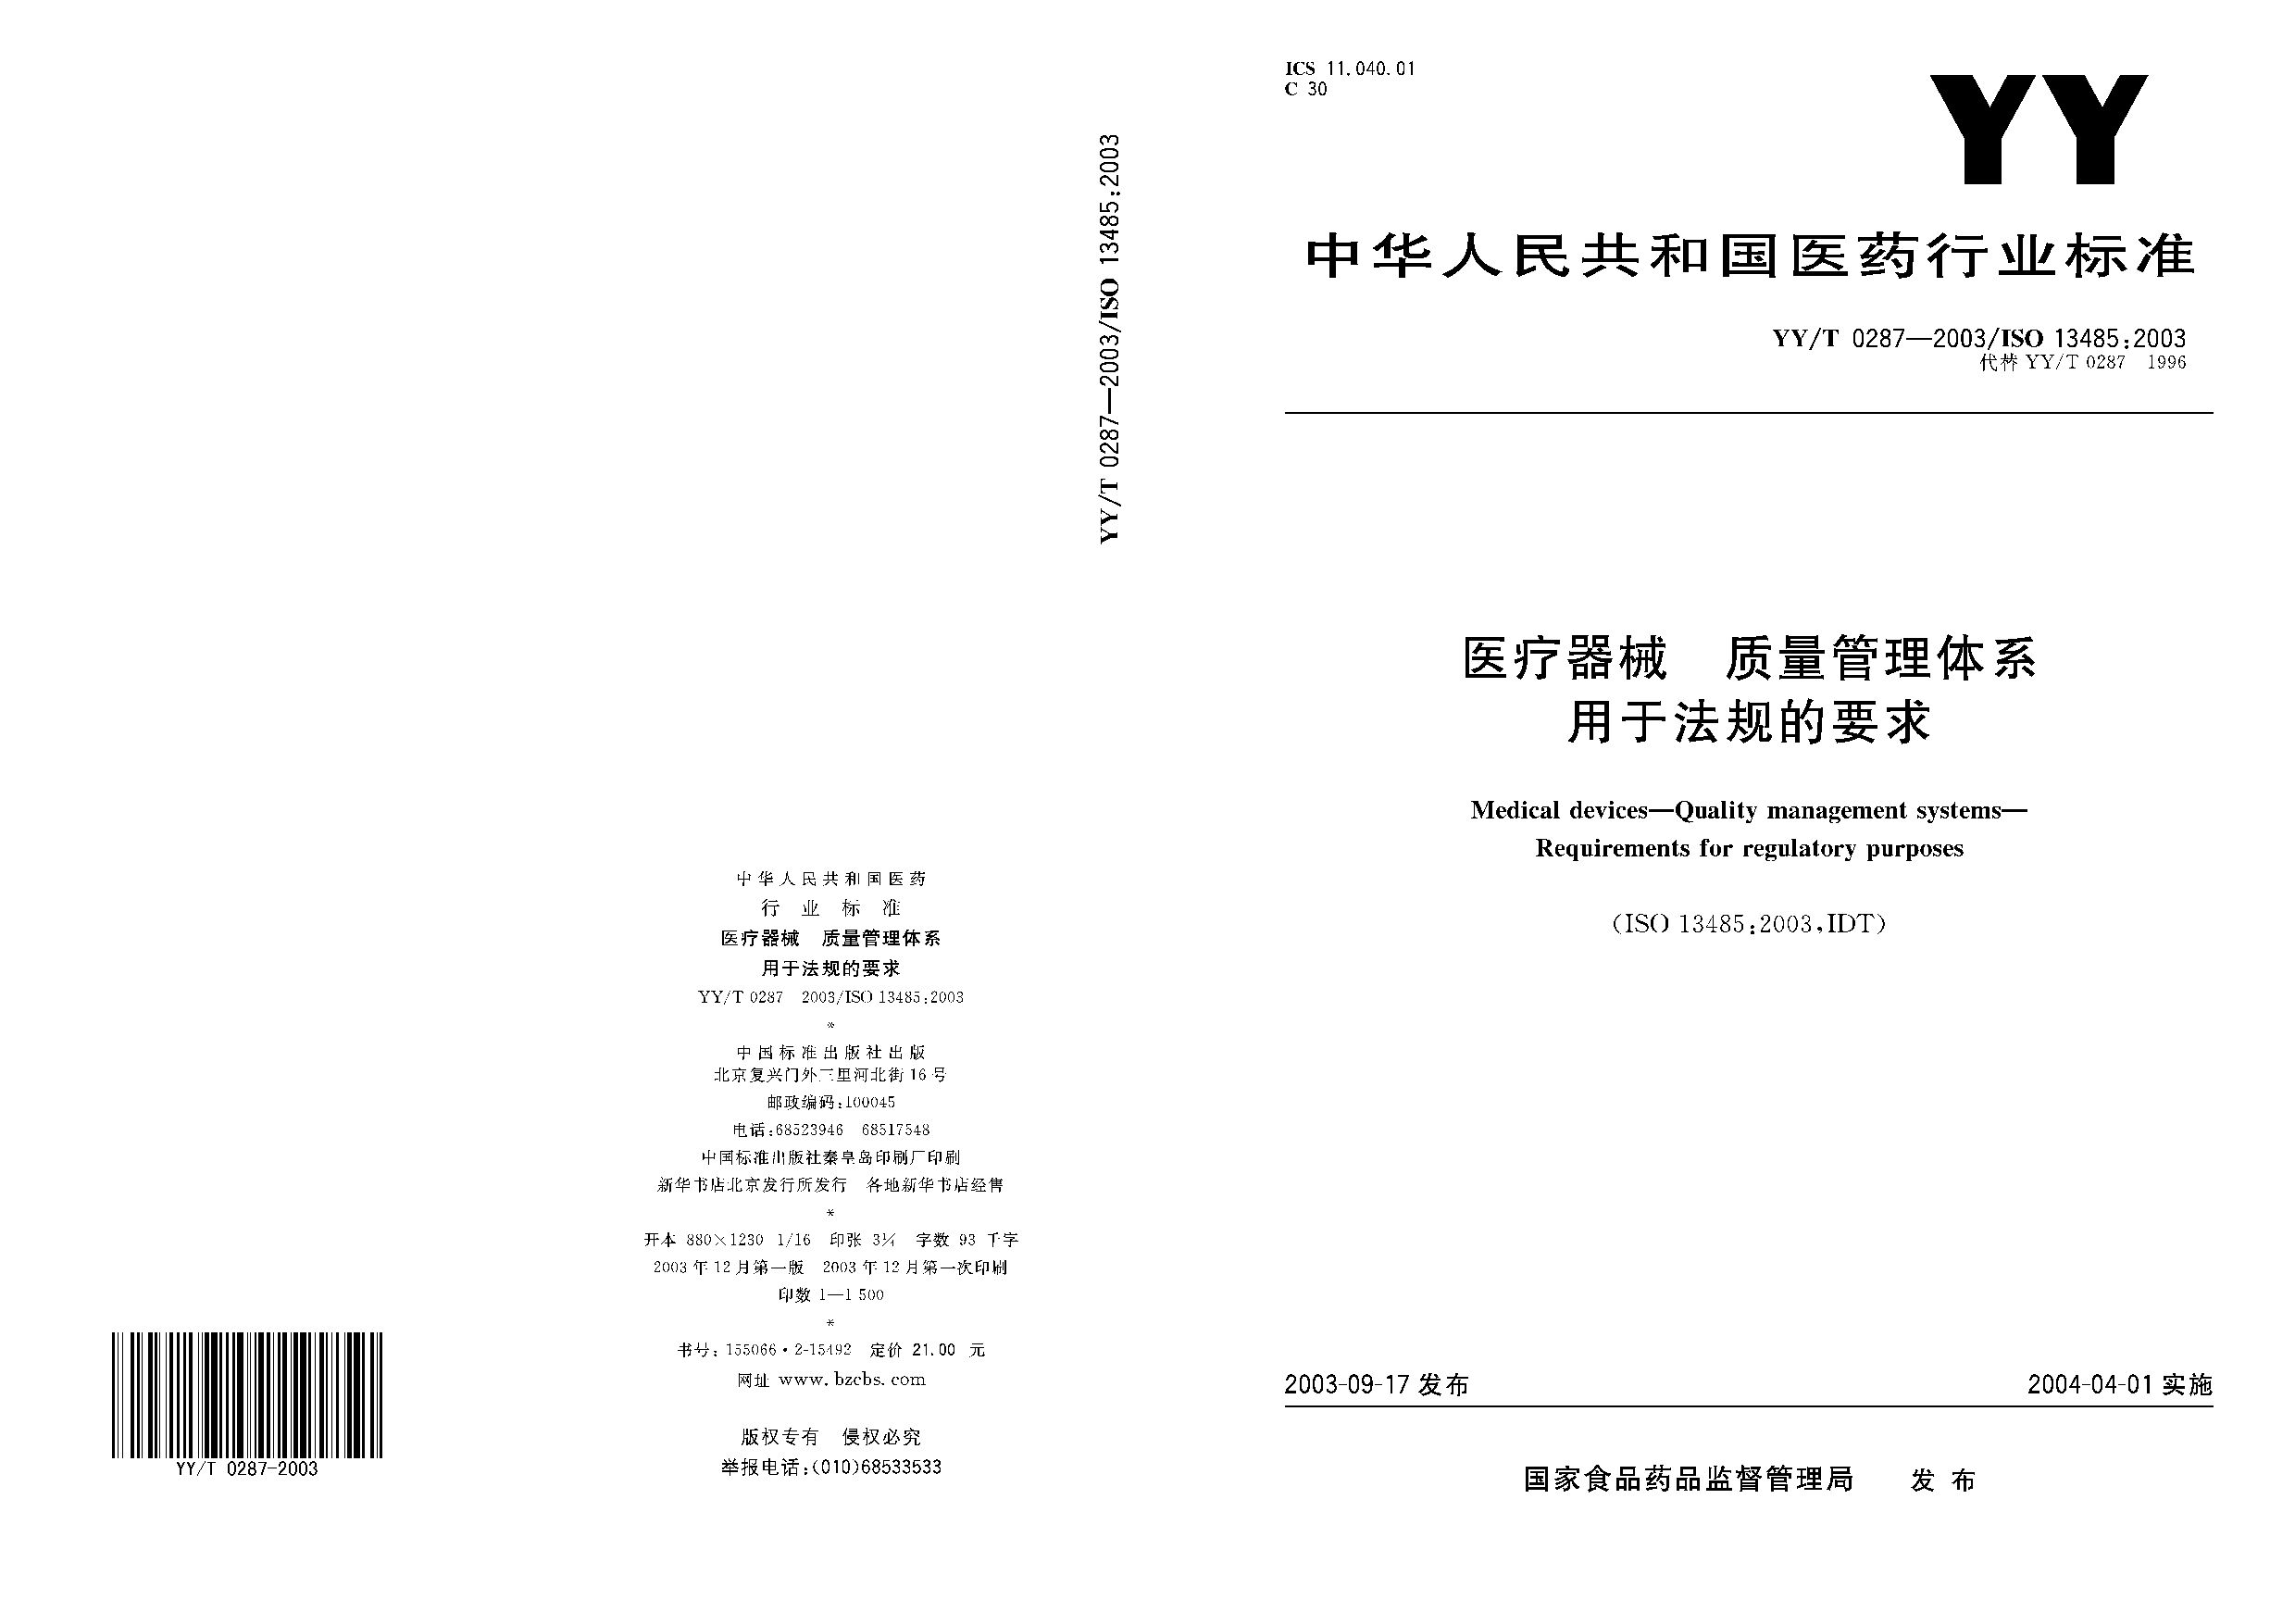 YY/T 0287-2003封面图